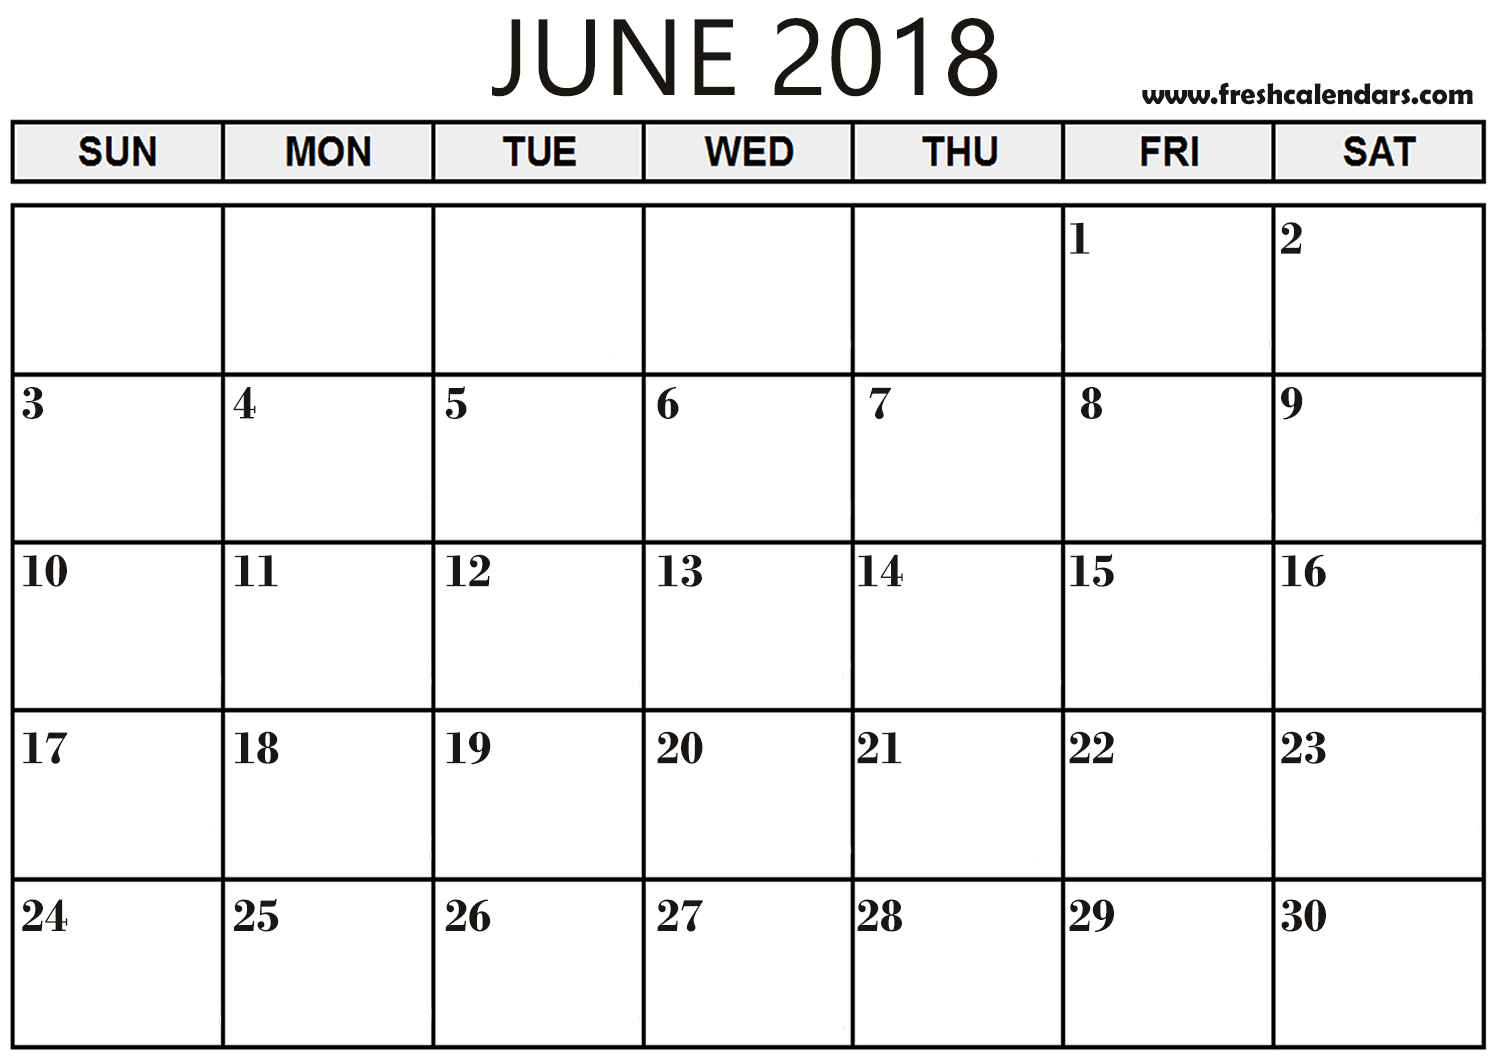 starfall calendar june 2018